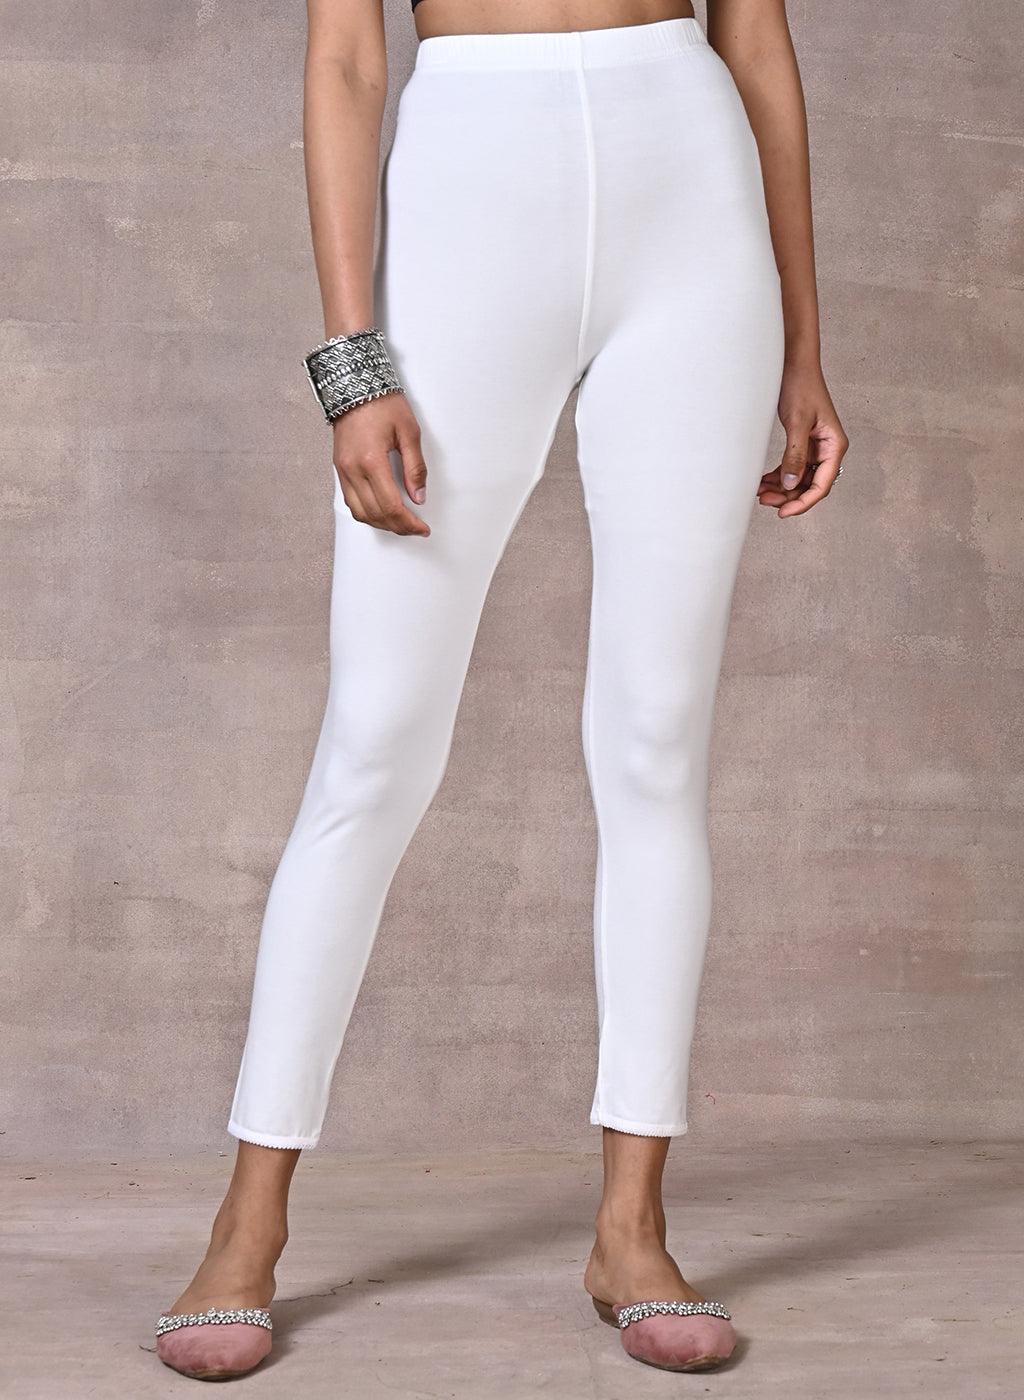 Buy Bottom wear WomenWomen Trouser PantsWomen Pants for KurtisCotton  Pants for Women Casual  chiku  Grey Combo Pant at Amazonin